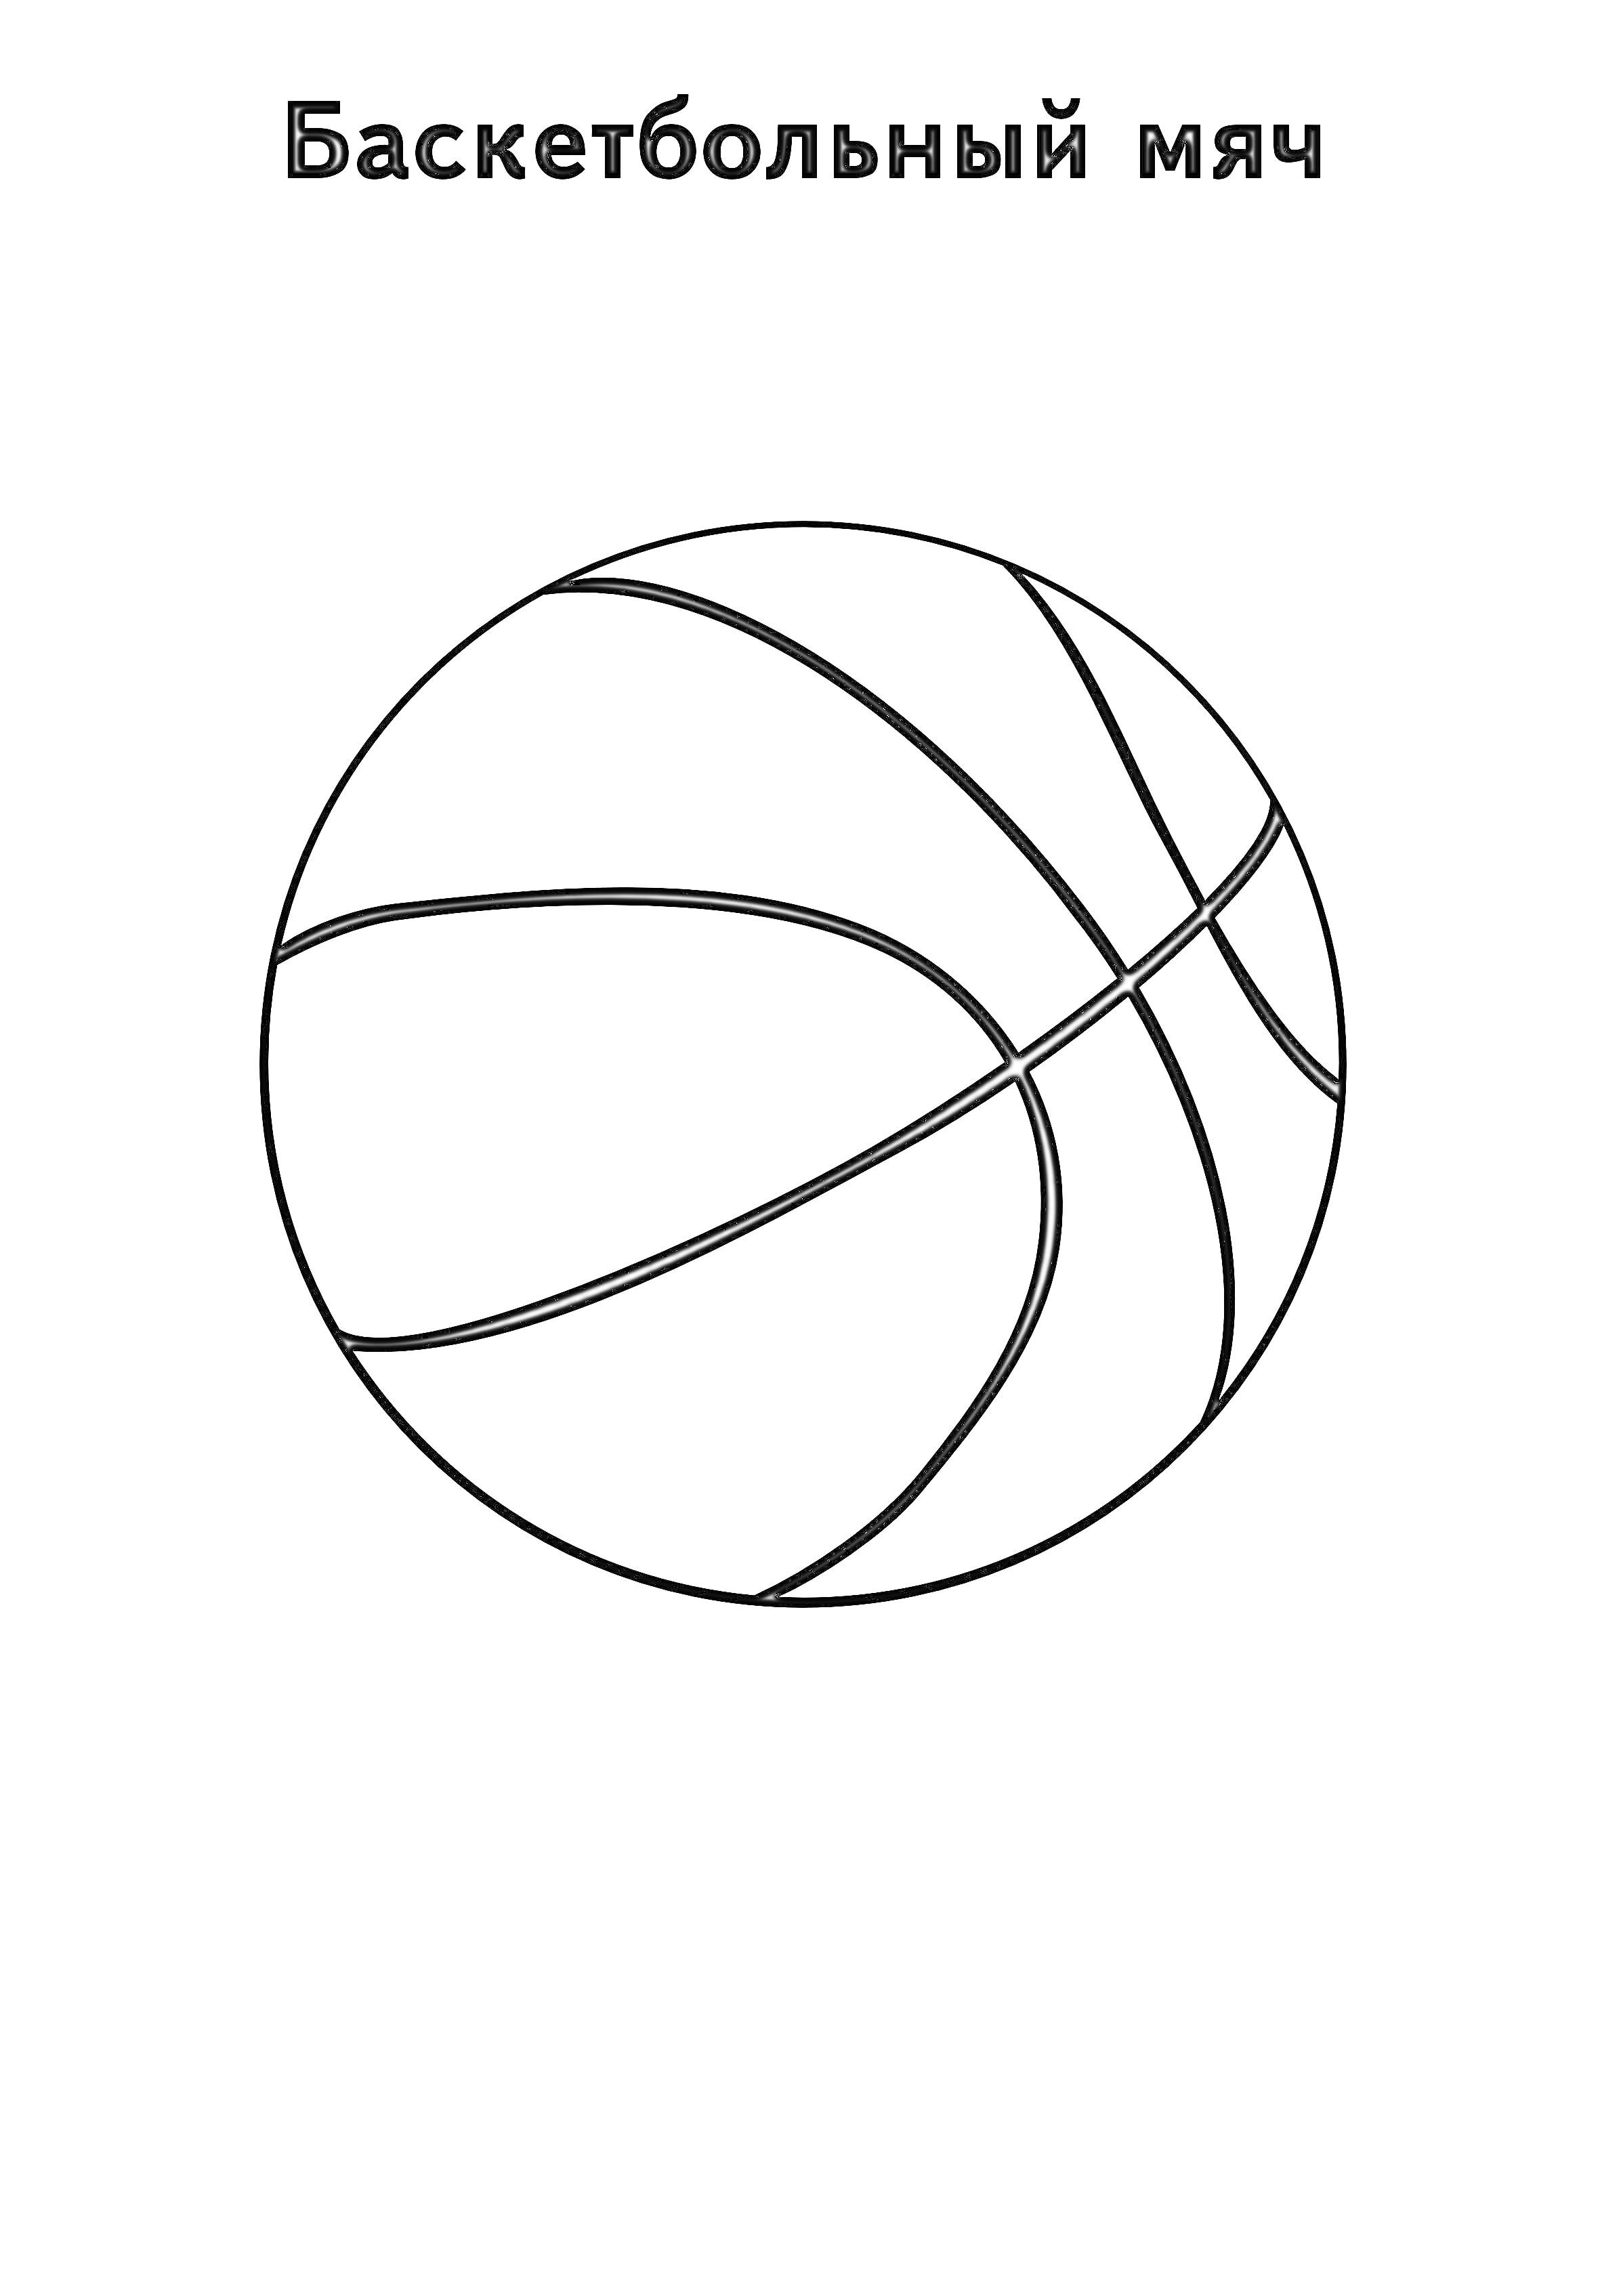 Раскраска Баскетбольный мяч со схемой линий